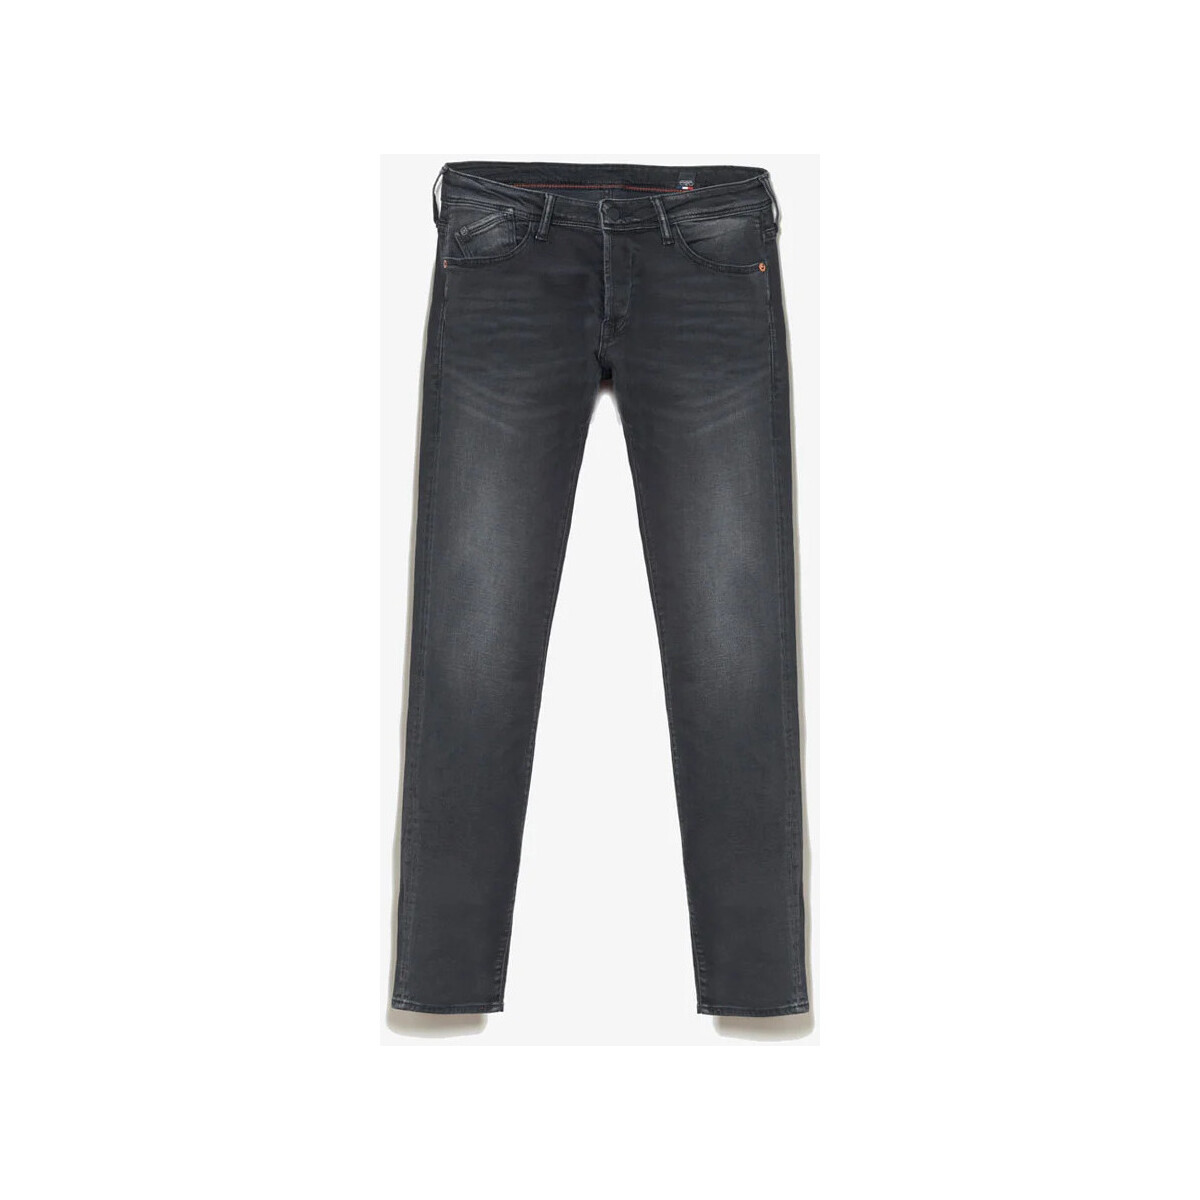 Le Temps des Cerises Noir Kel 700/11 adjusted jeans noi